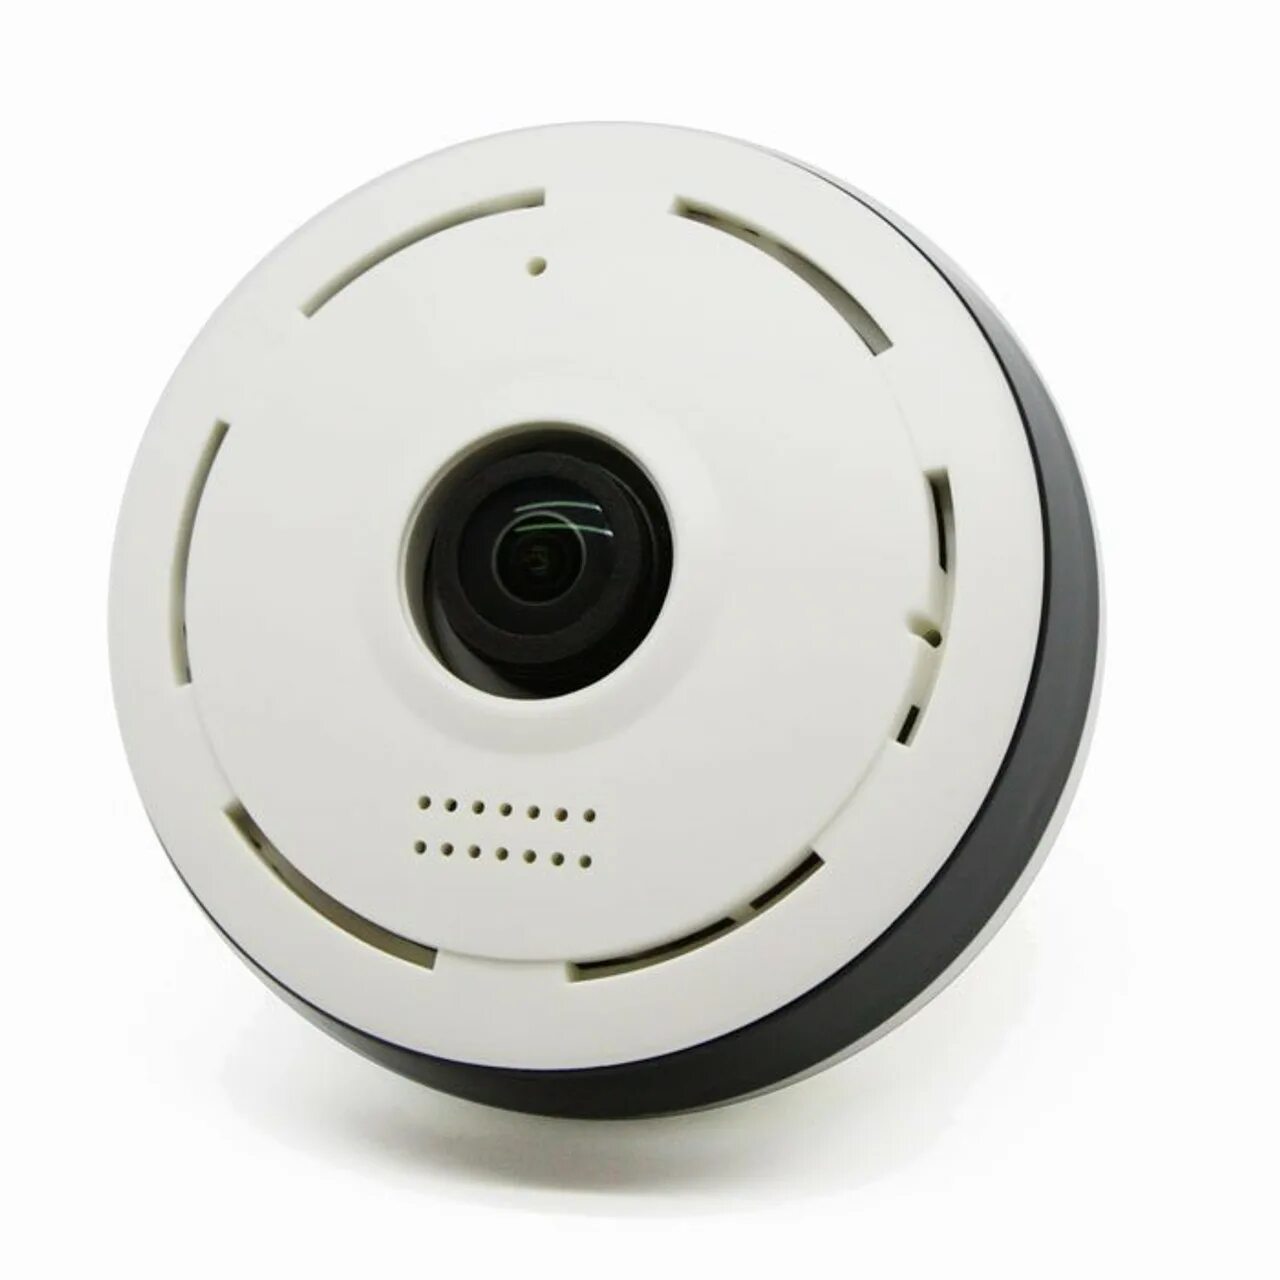 Wifi cam. WIFI Camera 360. Беспроводная IP-камера видеонаблюдения, 1620p, Wi-Fi, 360 p. Камера w720 360. Dongcheng камера беспроводная.